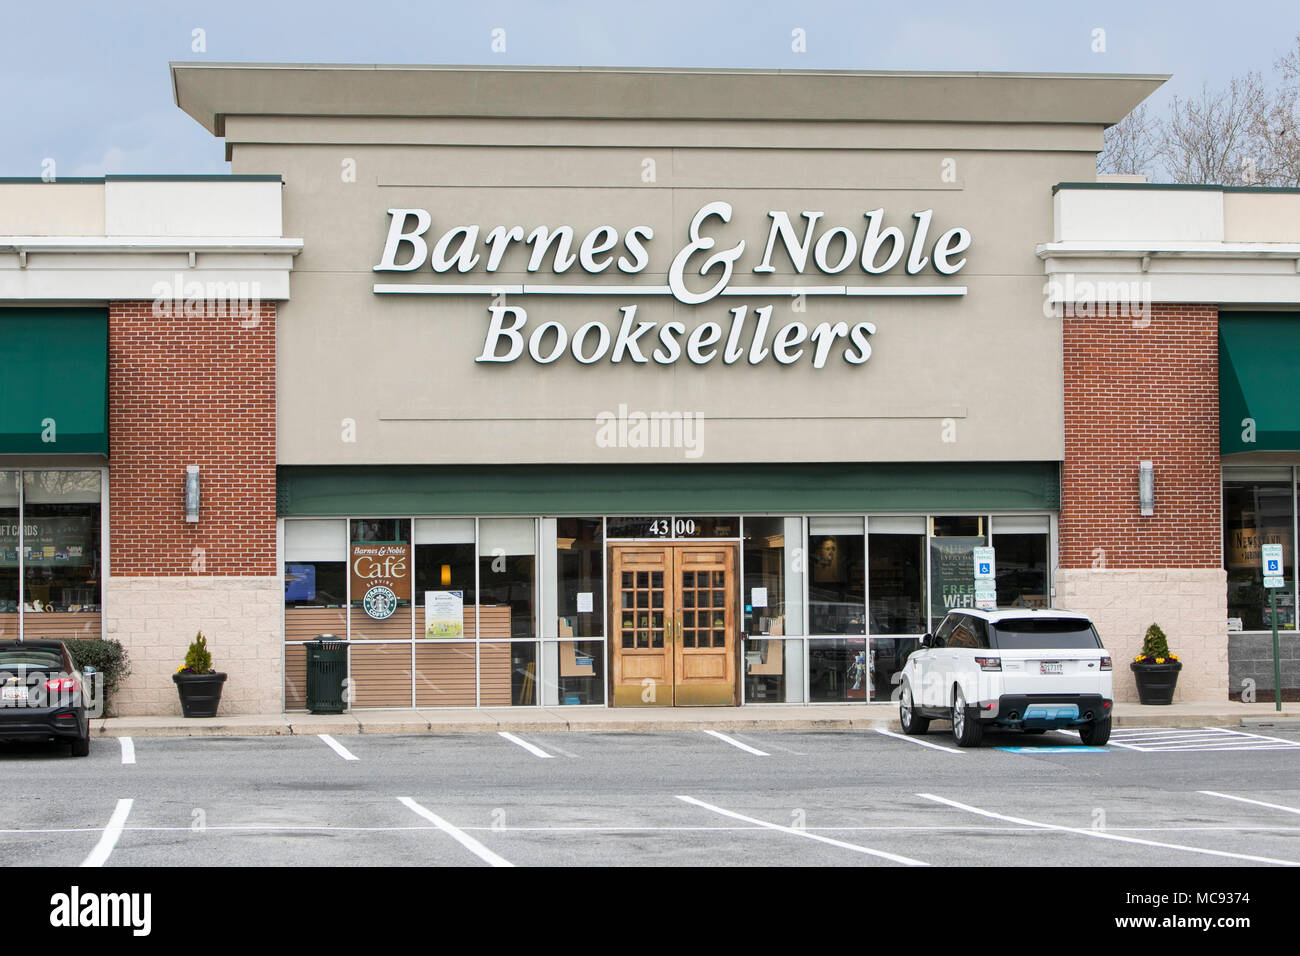 Un logo affiche à l'extérieur d'un Barnes & Noble Booksellers store à Ellicott City, Maryland le 13 avril 2018. Banque D'Images